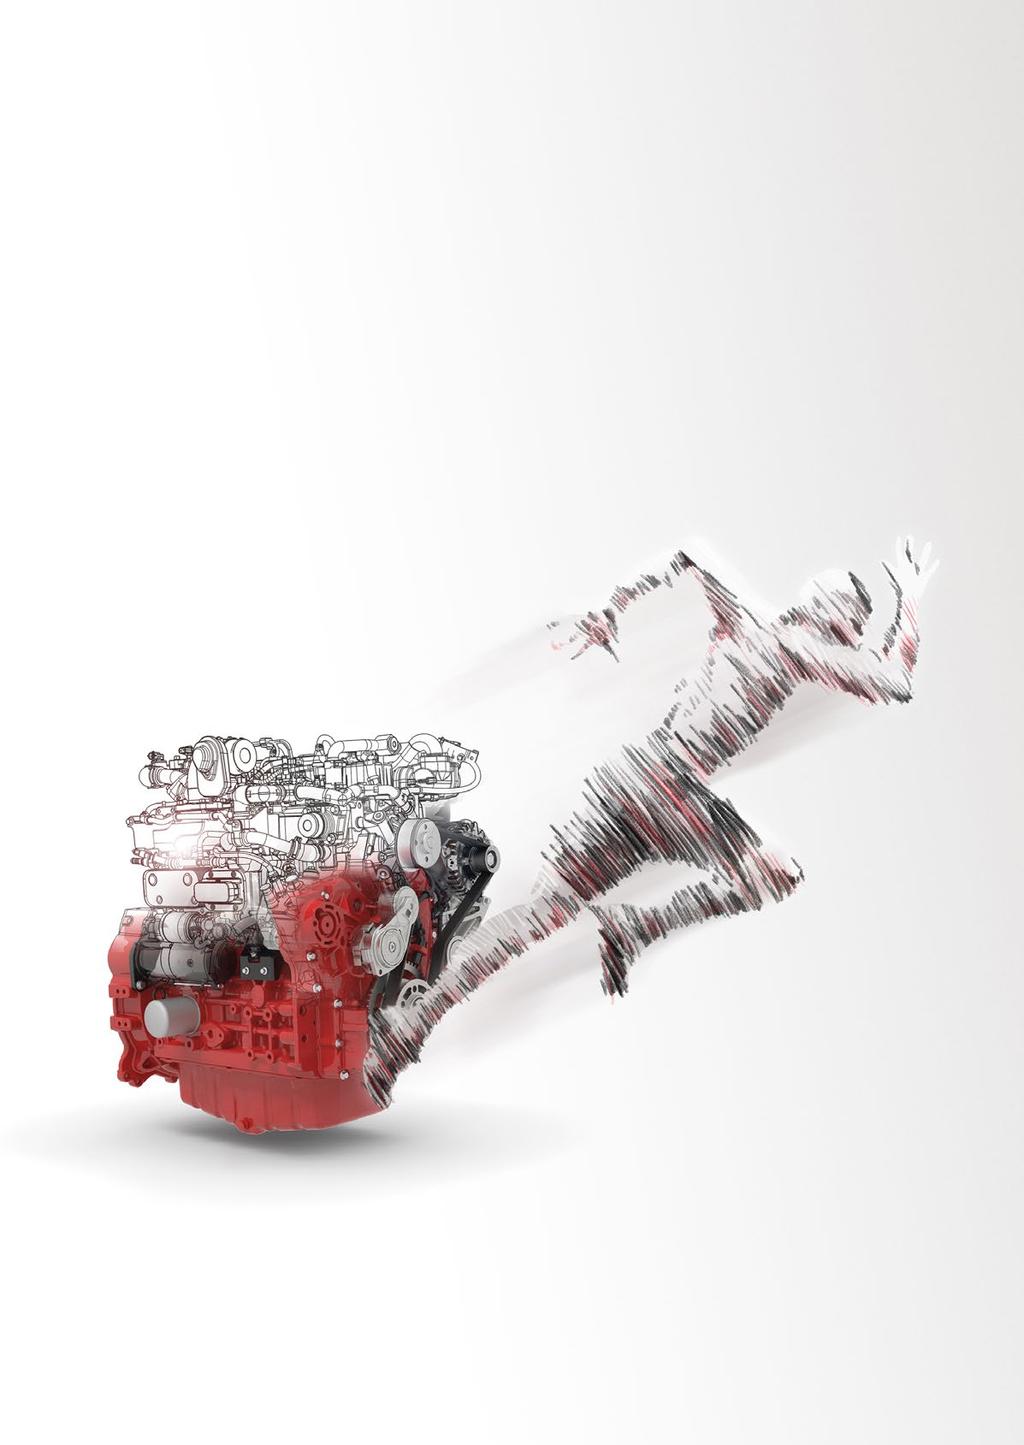 Durch zahlreiche Patente und INNOVATIONEN haben wir bei DEUTZ die Entwicklung des modernen Dieselmotors entscheidend mitbestimmt und waren dabei mit unseren Motoren der Zukunft schon immer einen